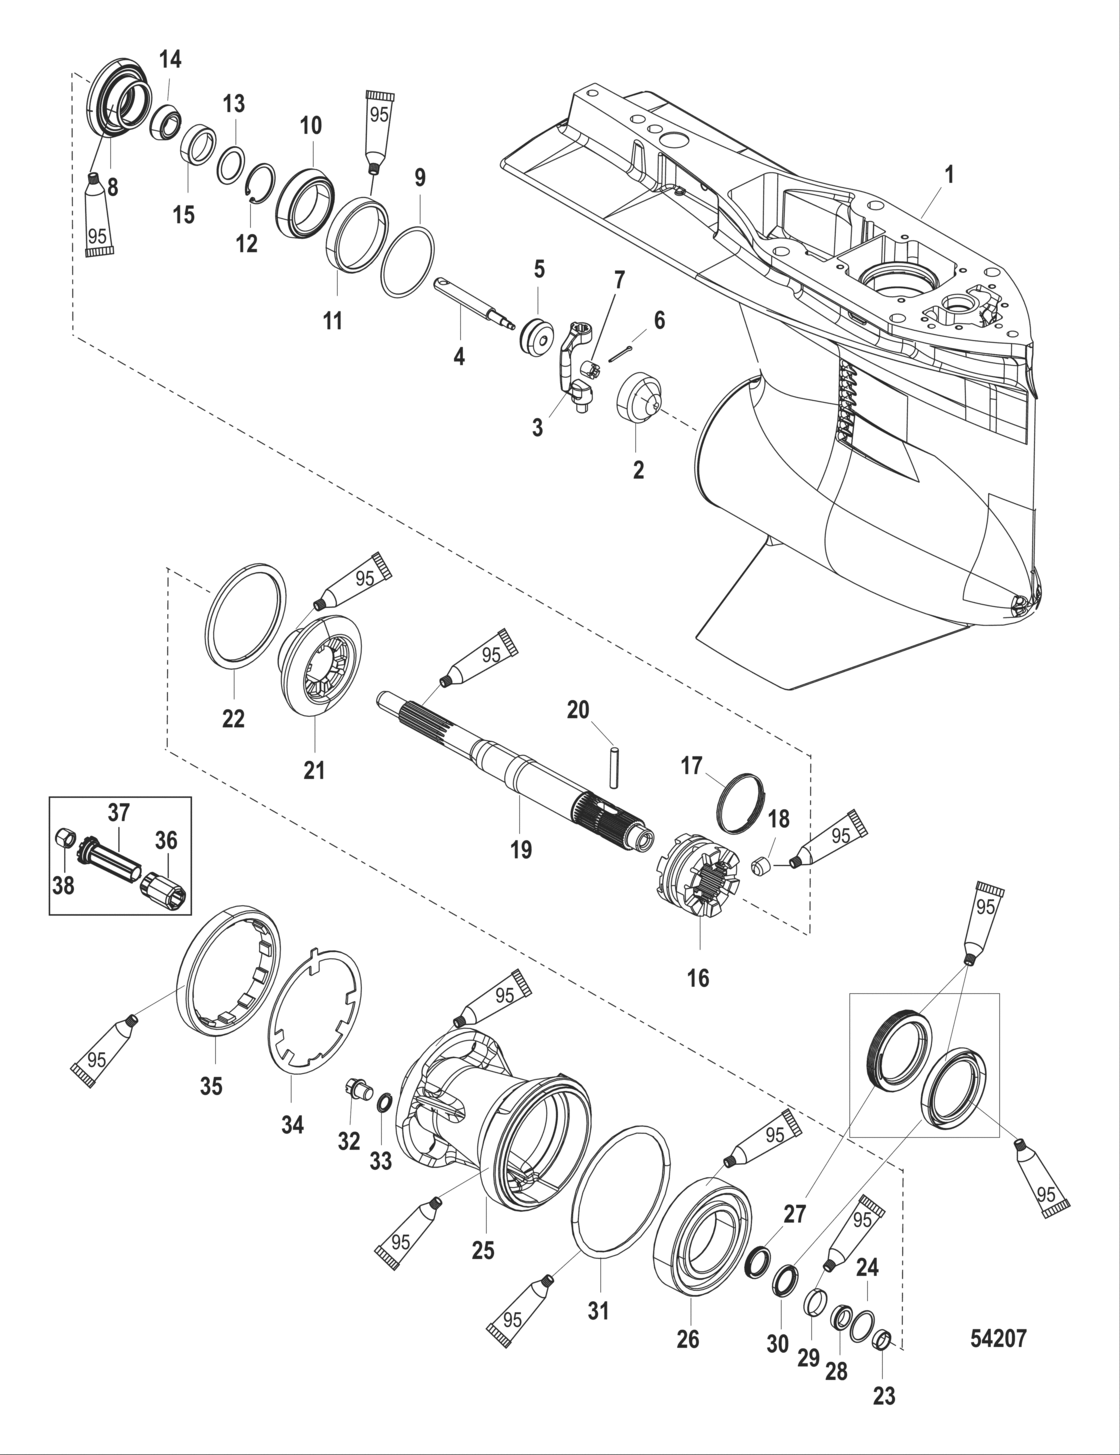 Gear Housing Propeller Shaft - Standard Rotation